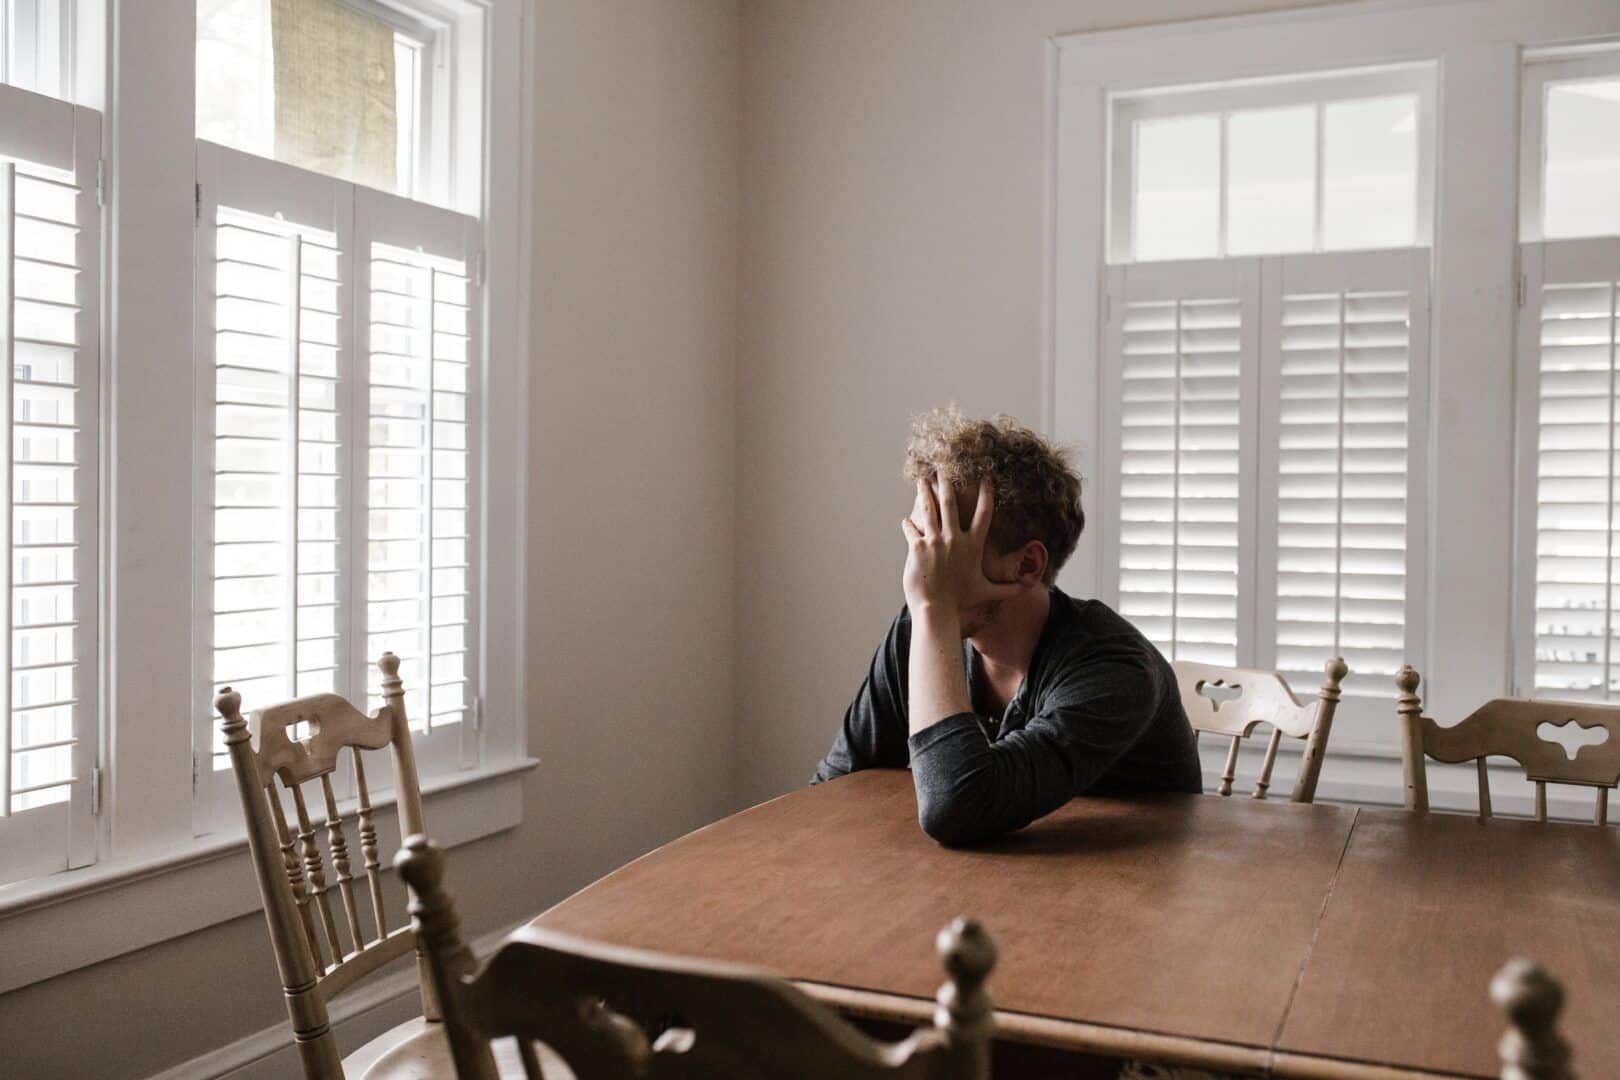 Autofobia, o que é? Origem, sintomas e tratamentos do medo da solidão